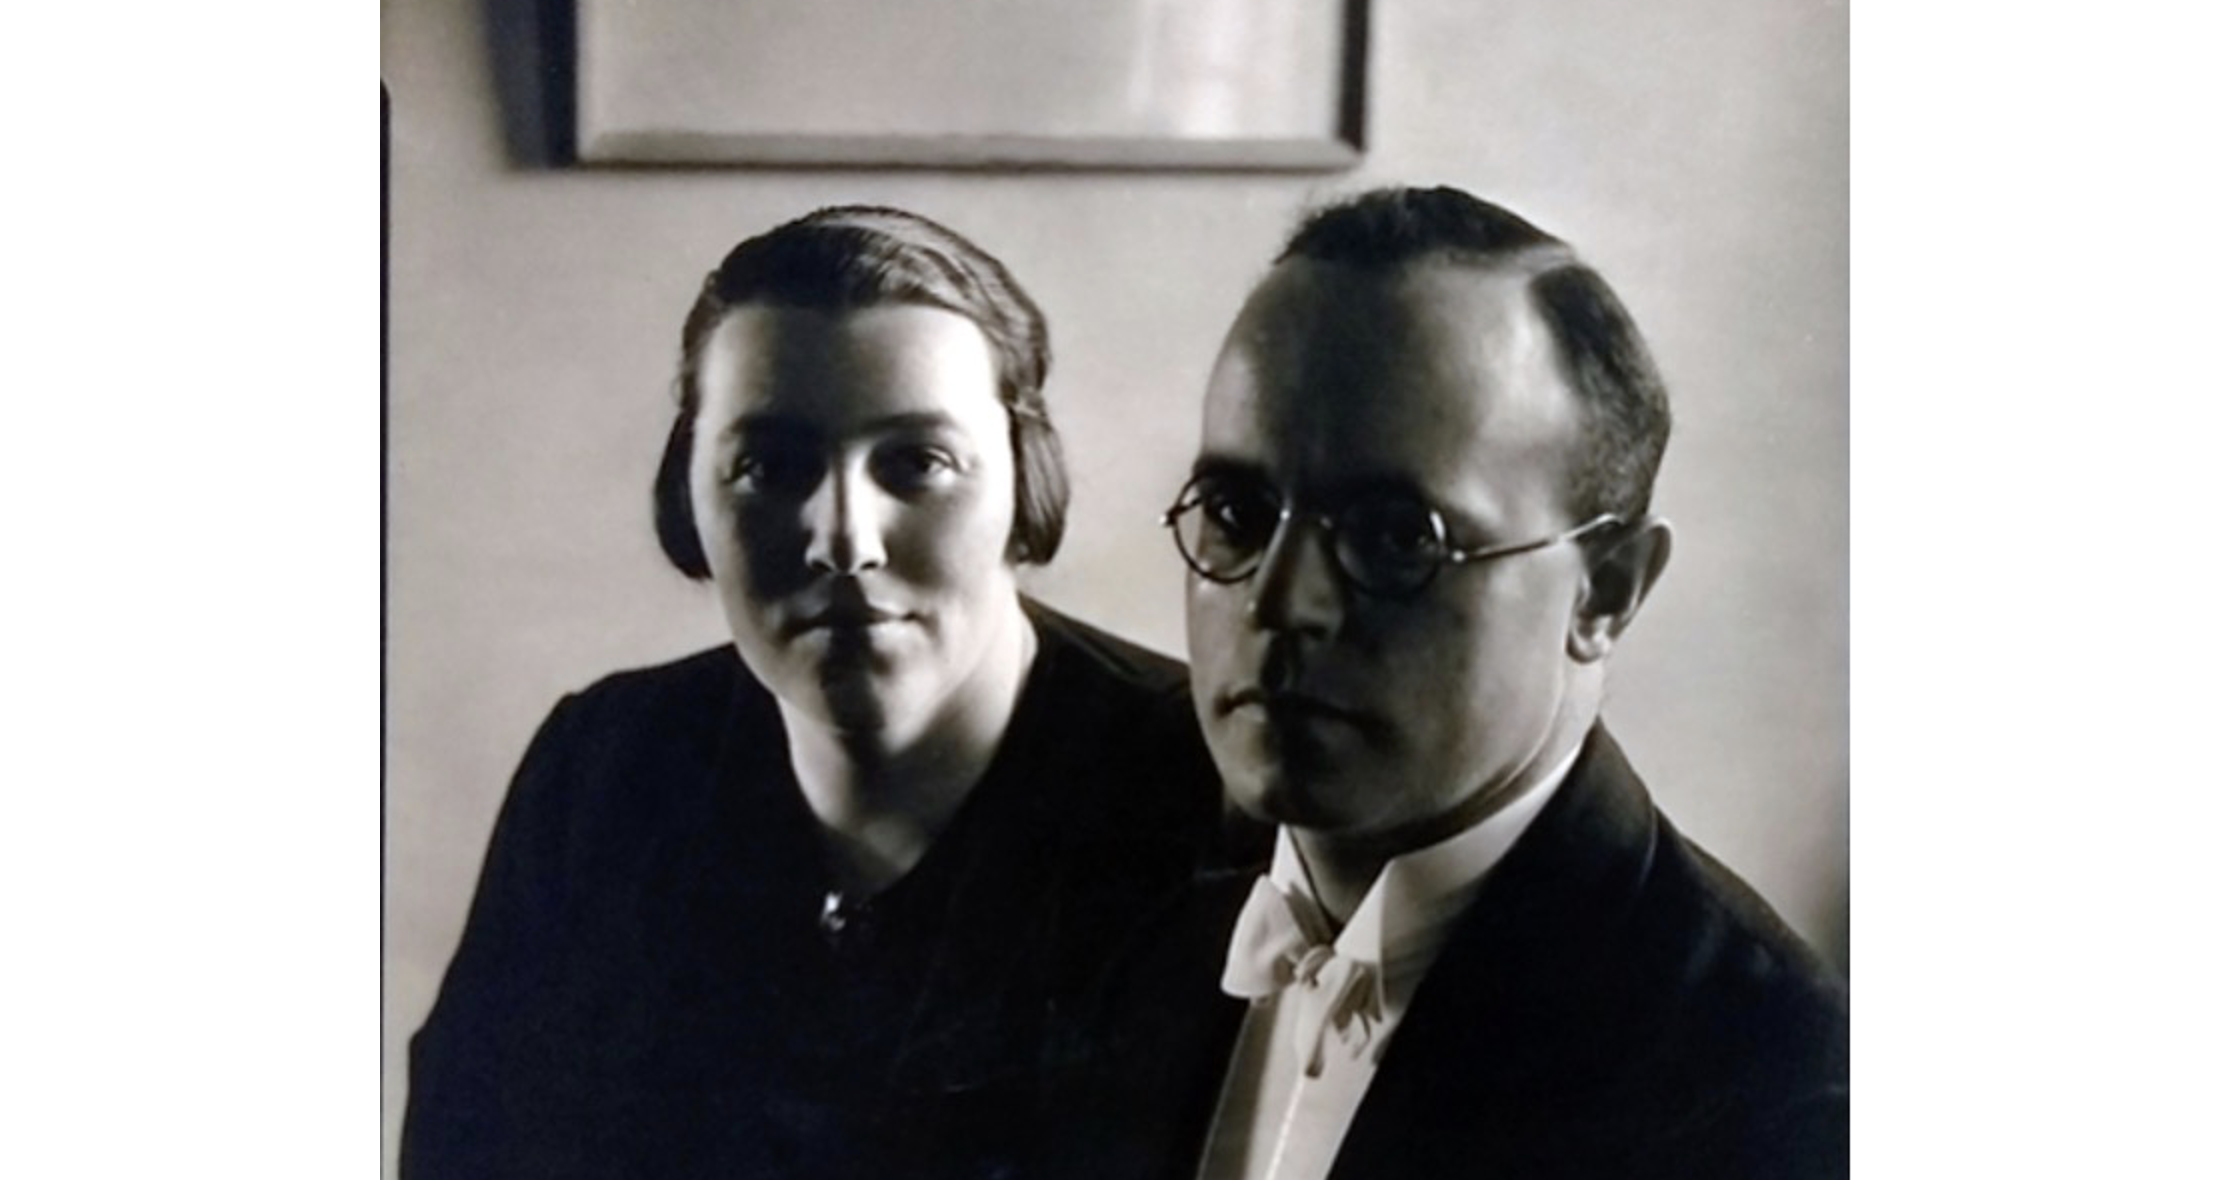 Engel Lund and Ferdinand Rauter, two men both in formal black attire